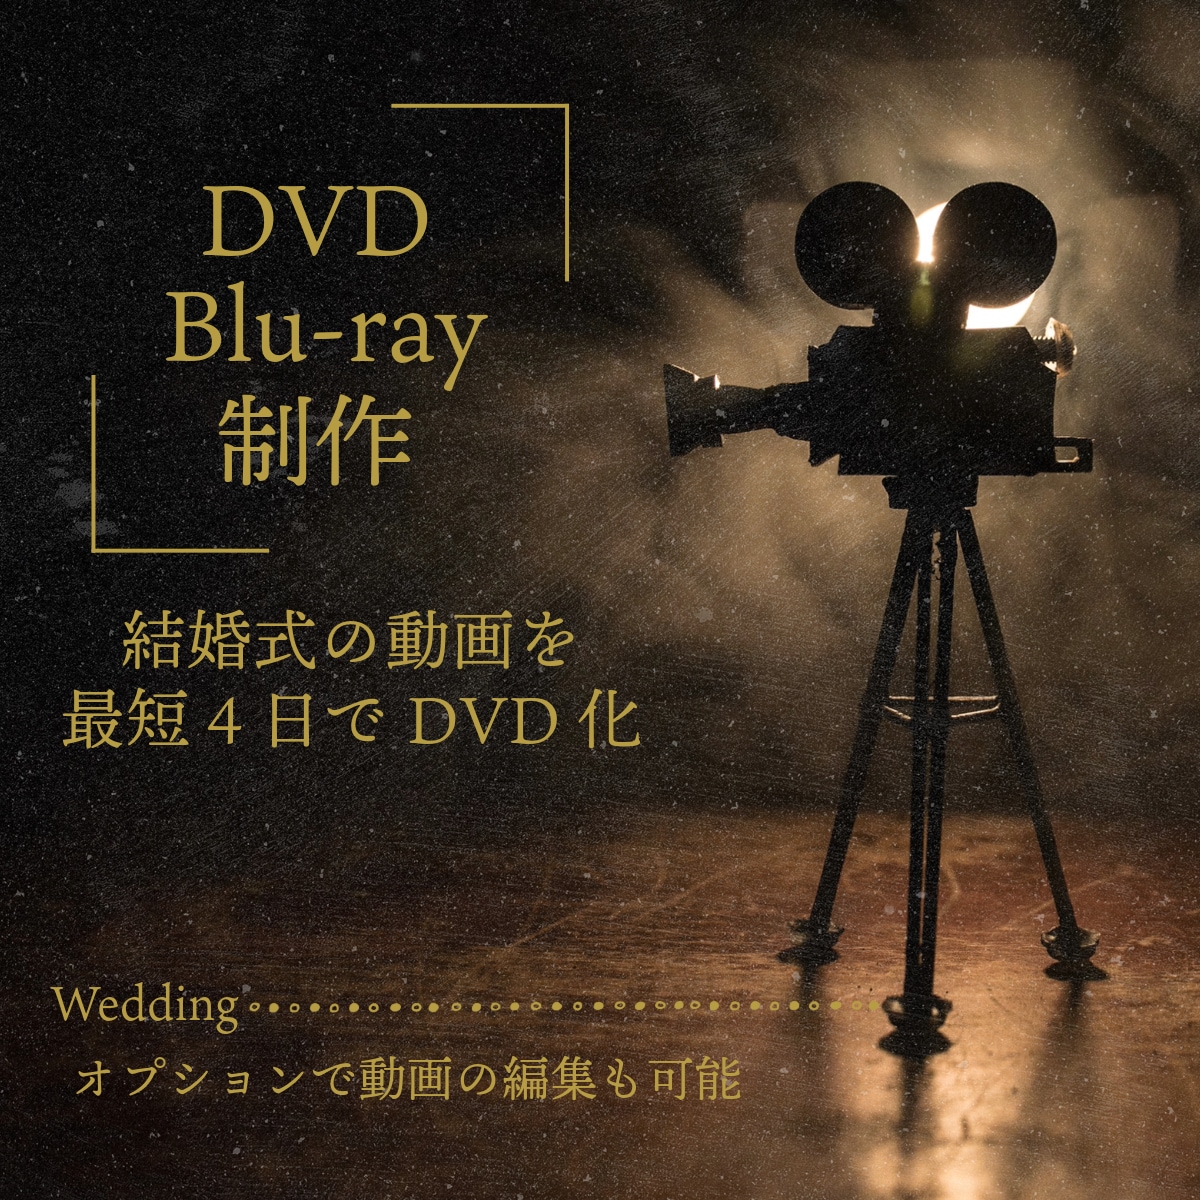 結婚式に使用するムービーをDVD化します お客様の動画データをDVDやBlu-rayに変換します イメージ1